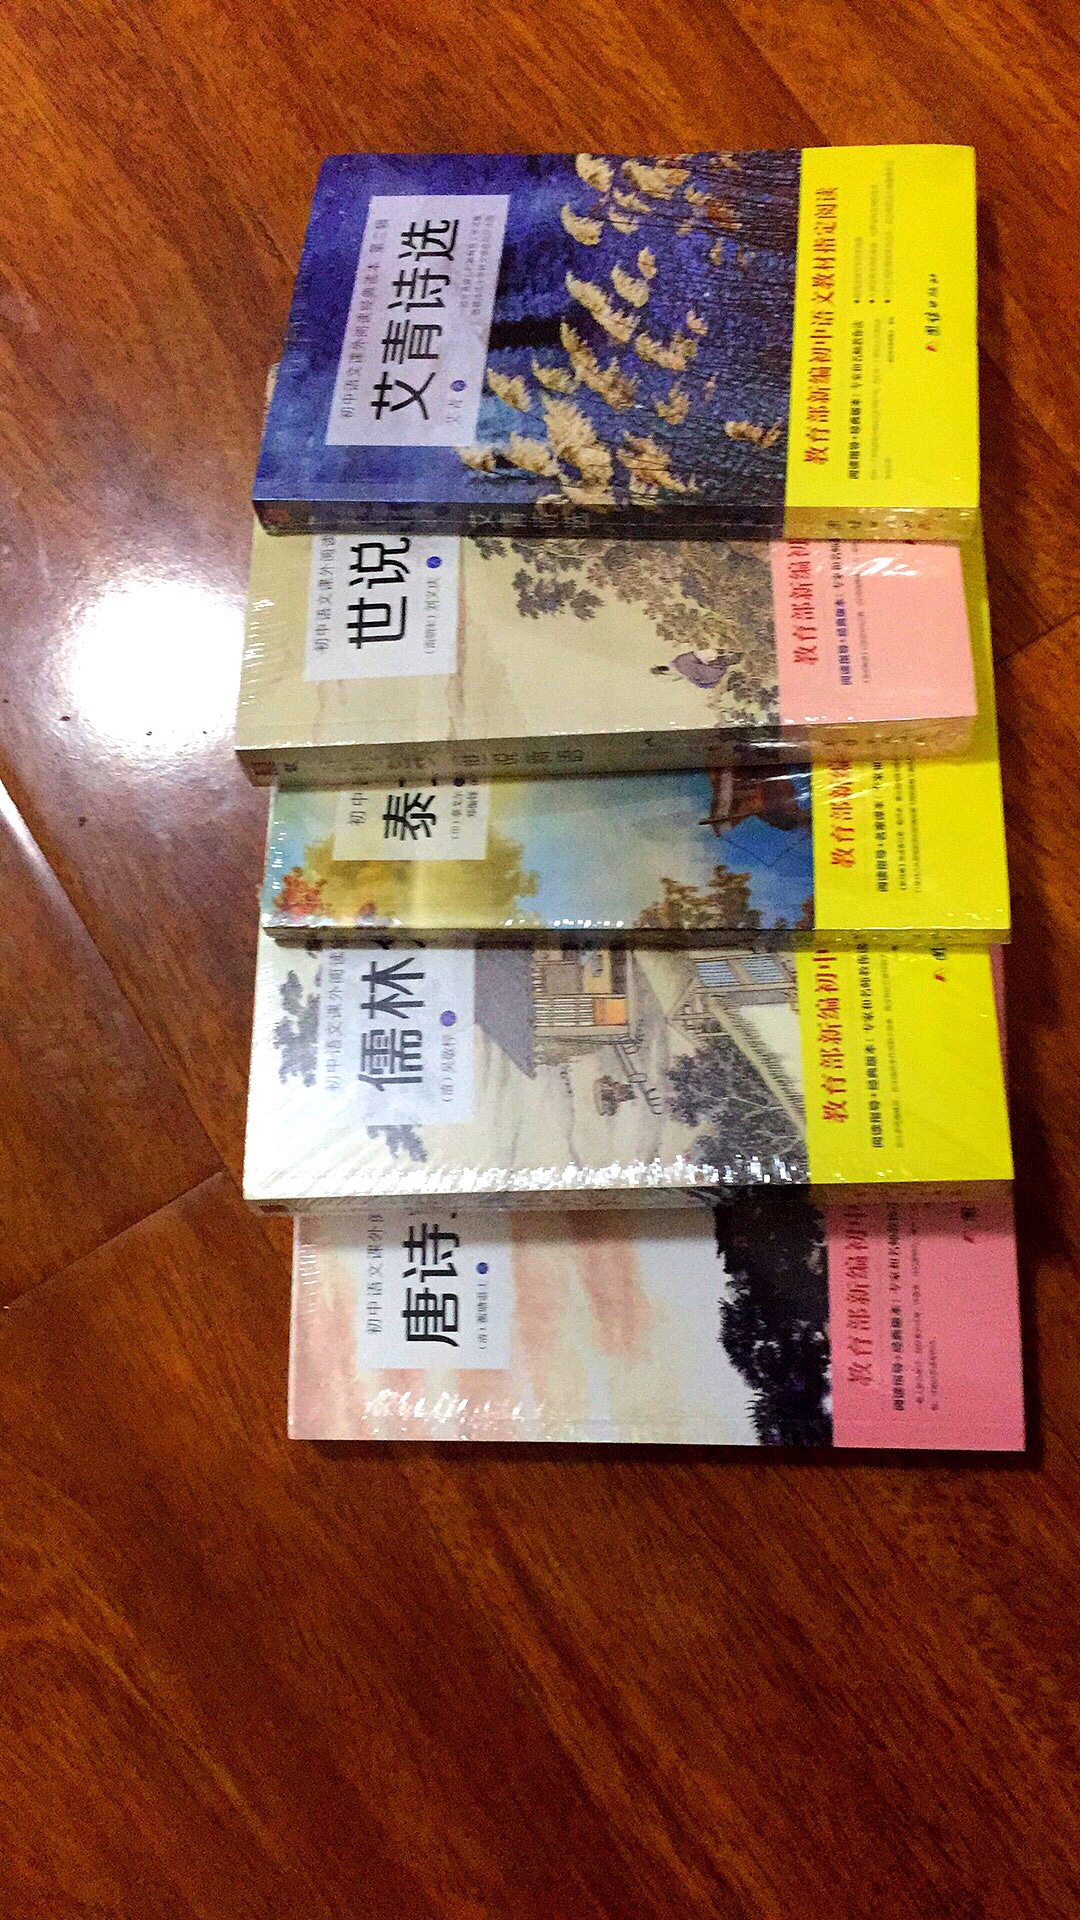 这是教育部新编初中语文指定阅读的课外书，打包购买很实惠，印刷质量还不错，送货速度快，好评！